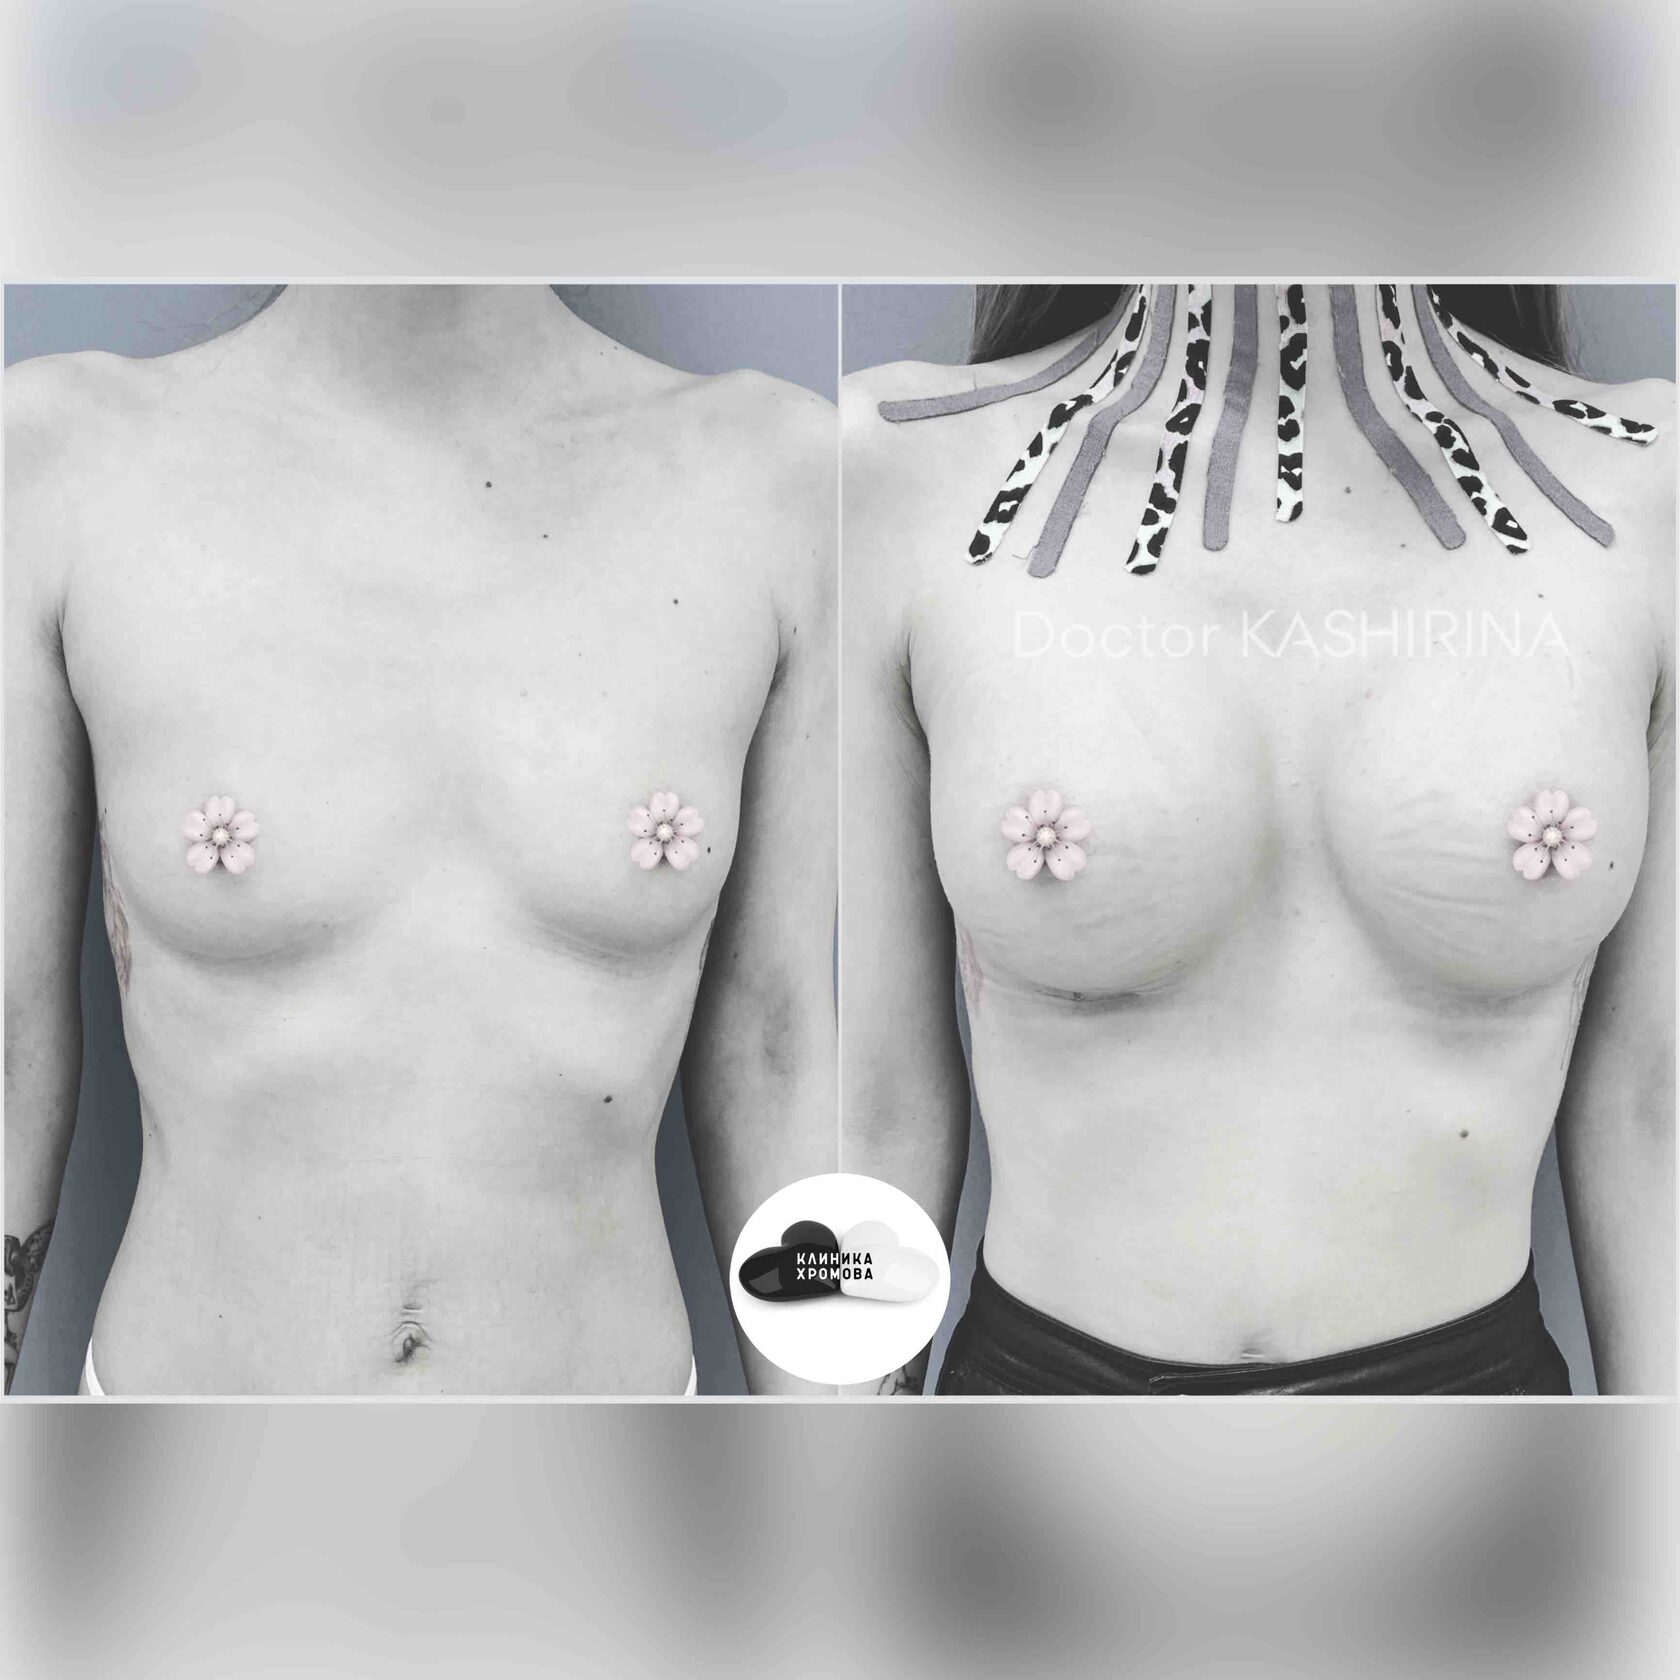 разные импланты на одну грудь фото 25